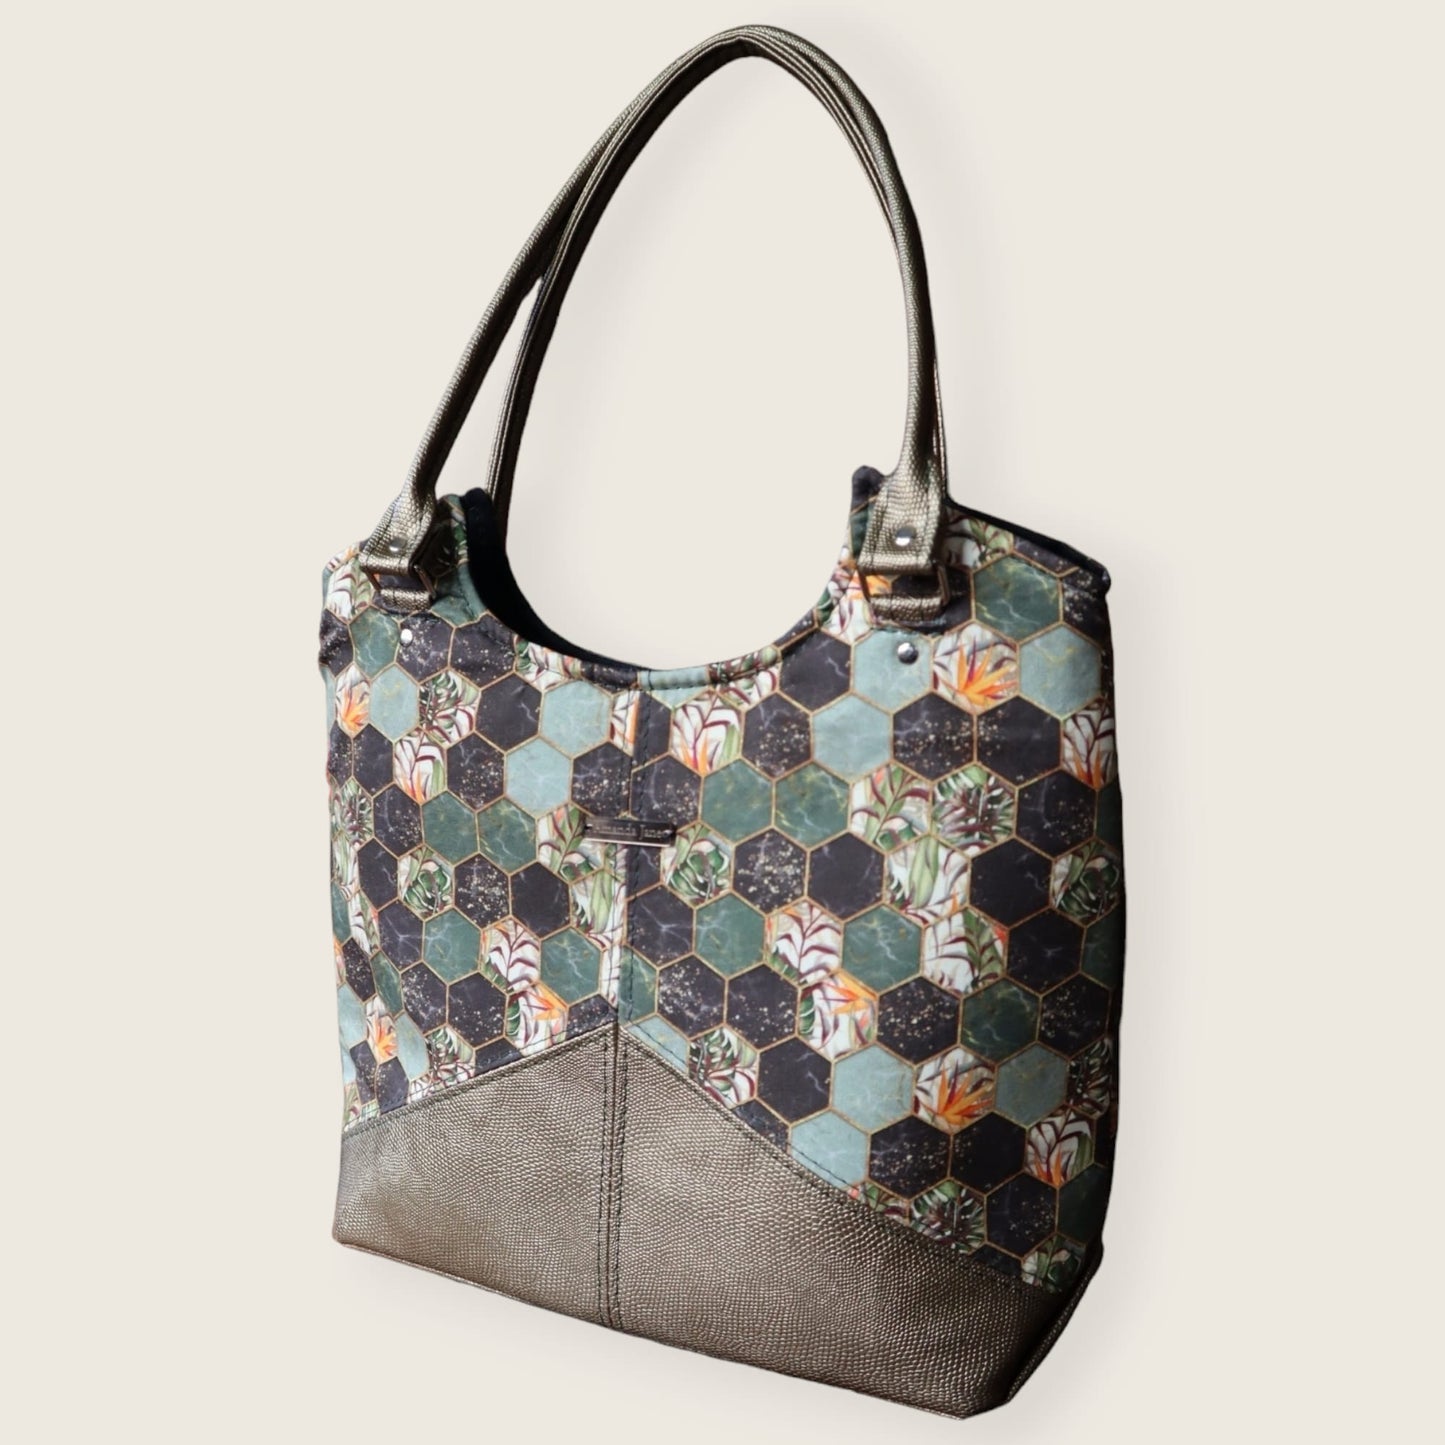 Handcrafted handbag purse shoulder bag tropical leaves